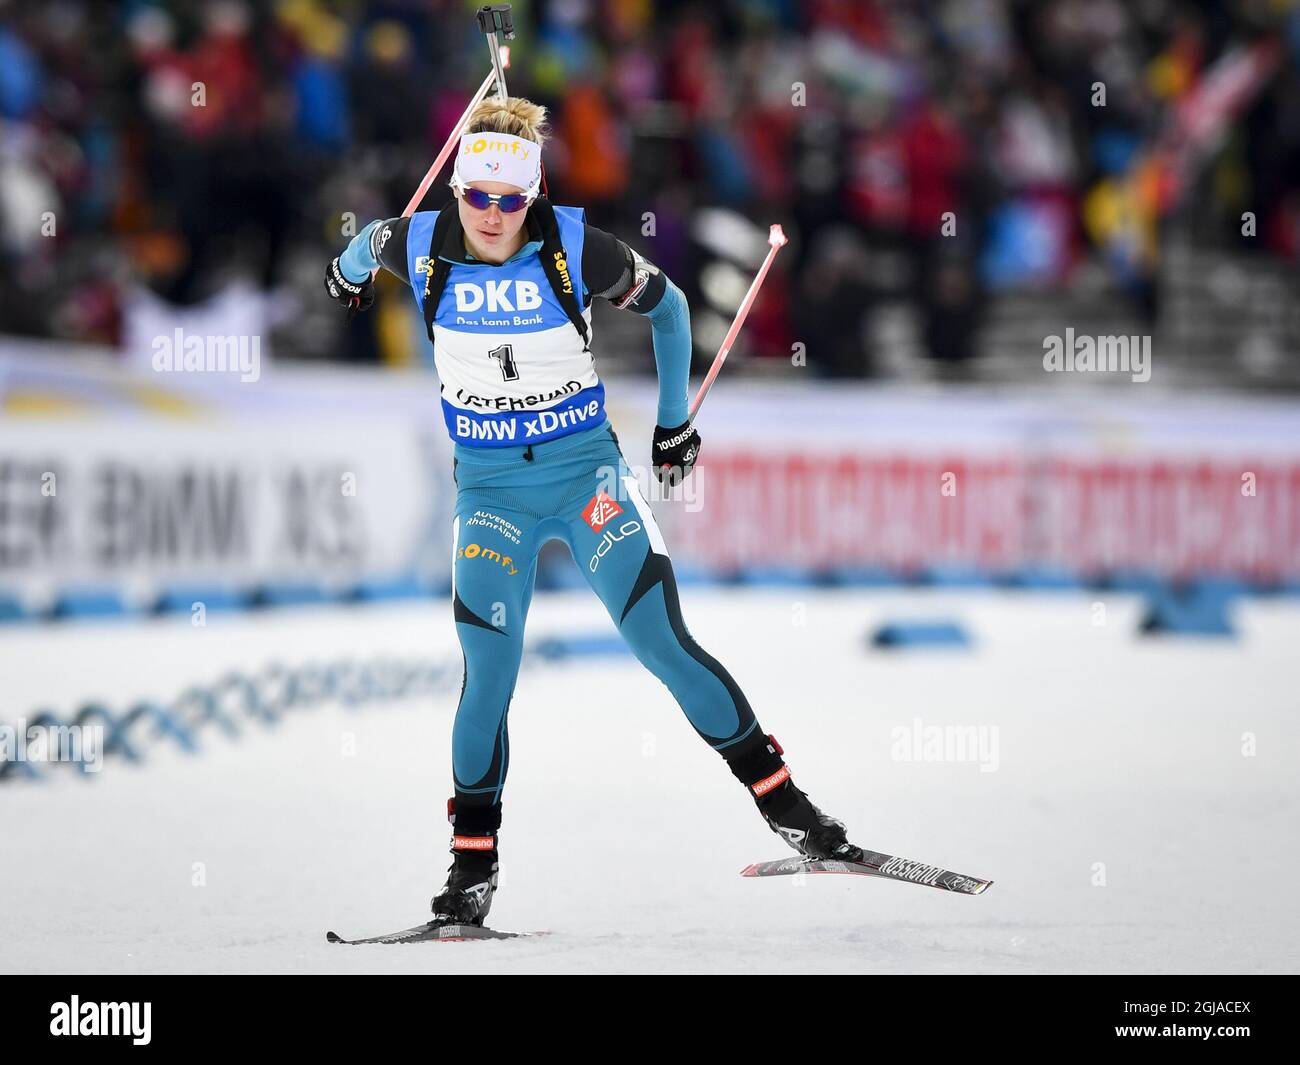 Marie Dorin Habert di Francia in azione durante l'inseguimento femminile di 10 km durante la Coppa del mondo di Biathlon a Ostersund, Svezia settentrionale, il 04 dicembre 2016. Foto: Anders Wiklund / TT / code 10040 Foto Stock